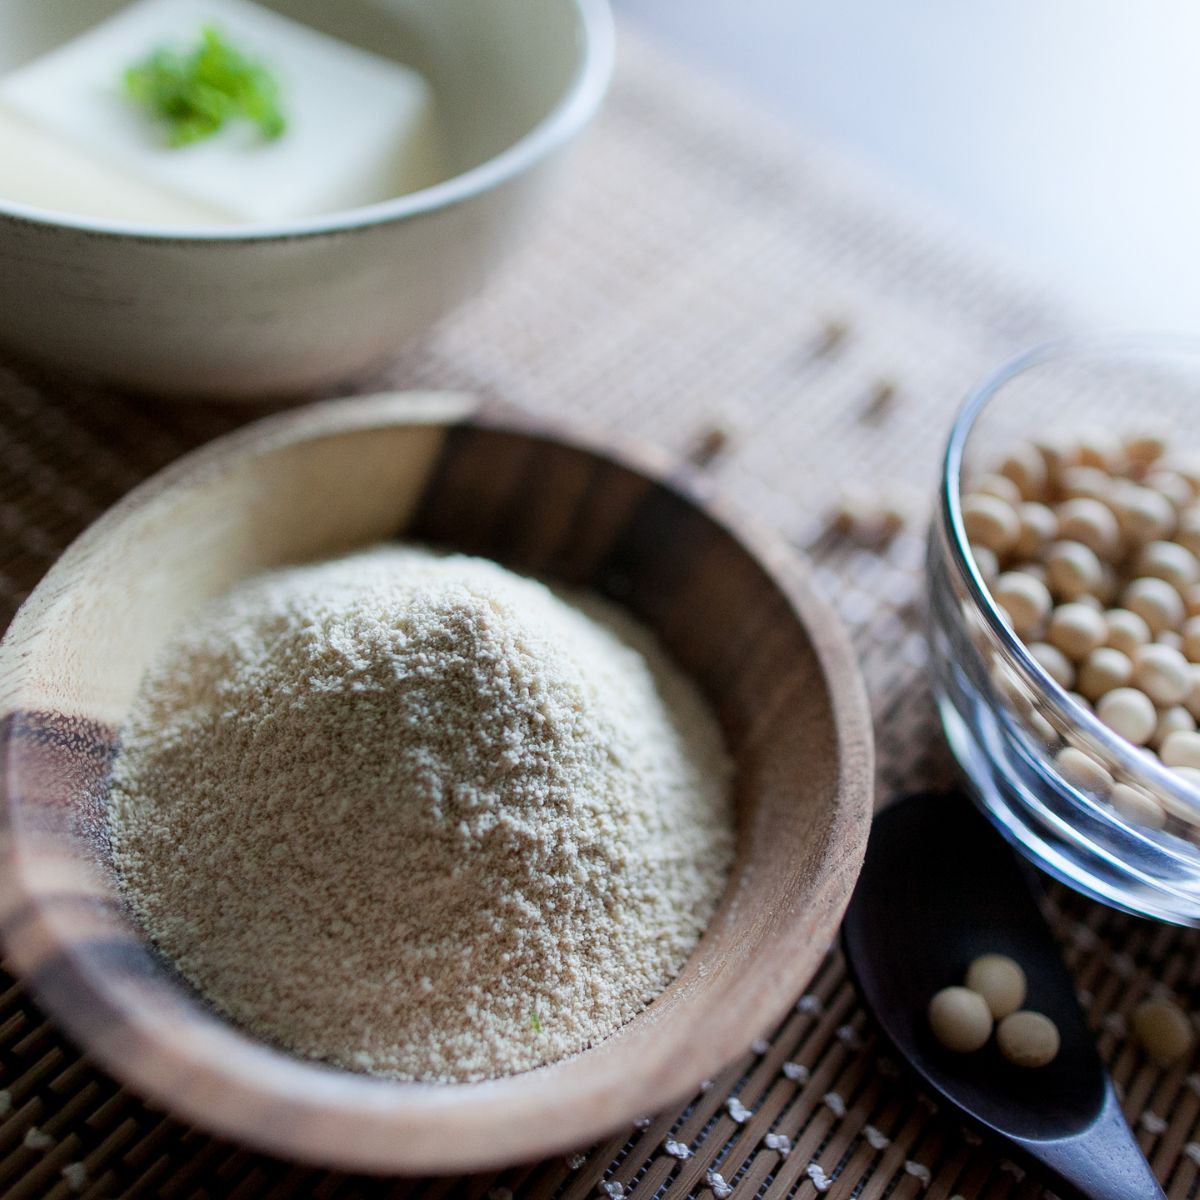 A bowl of okara powder, soy beans, and tofu